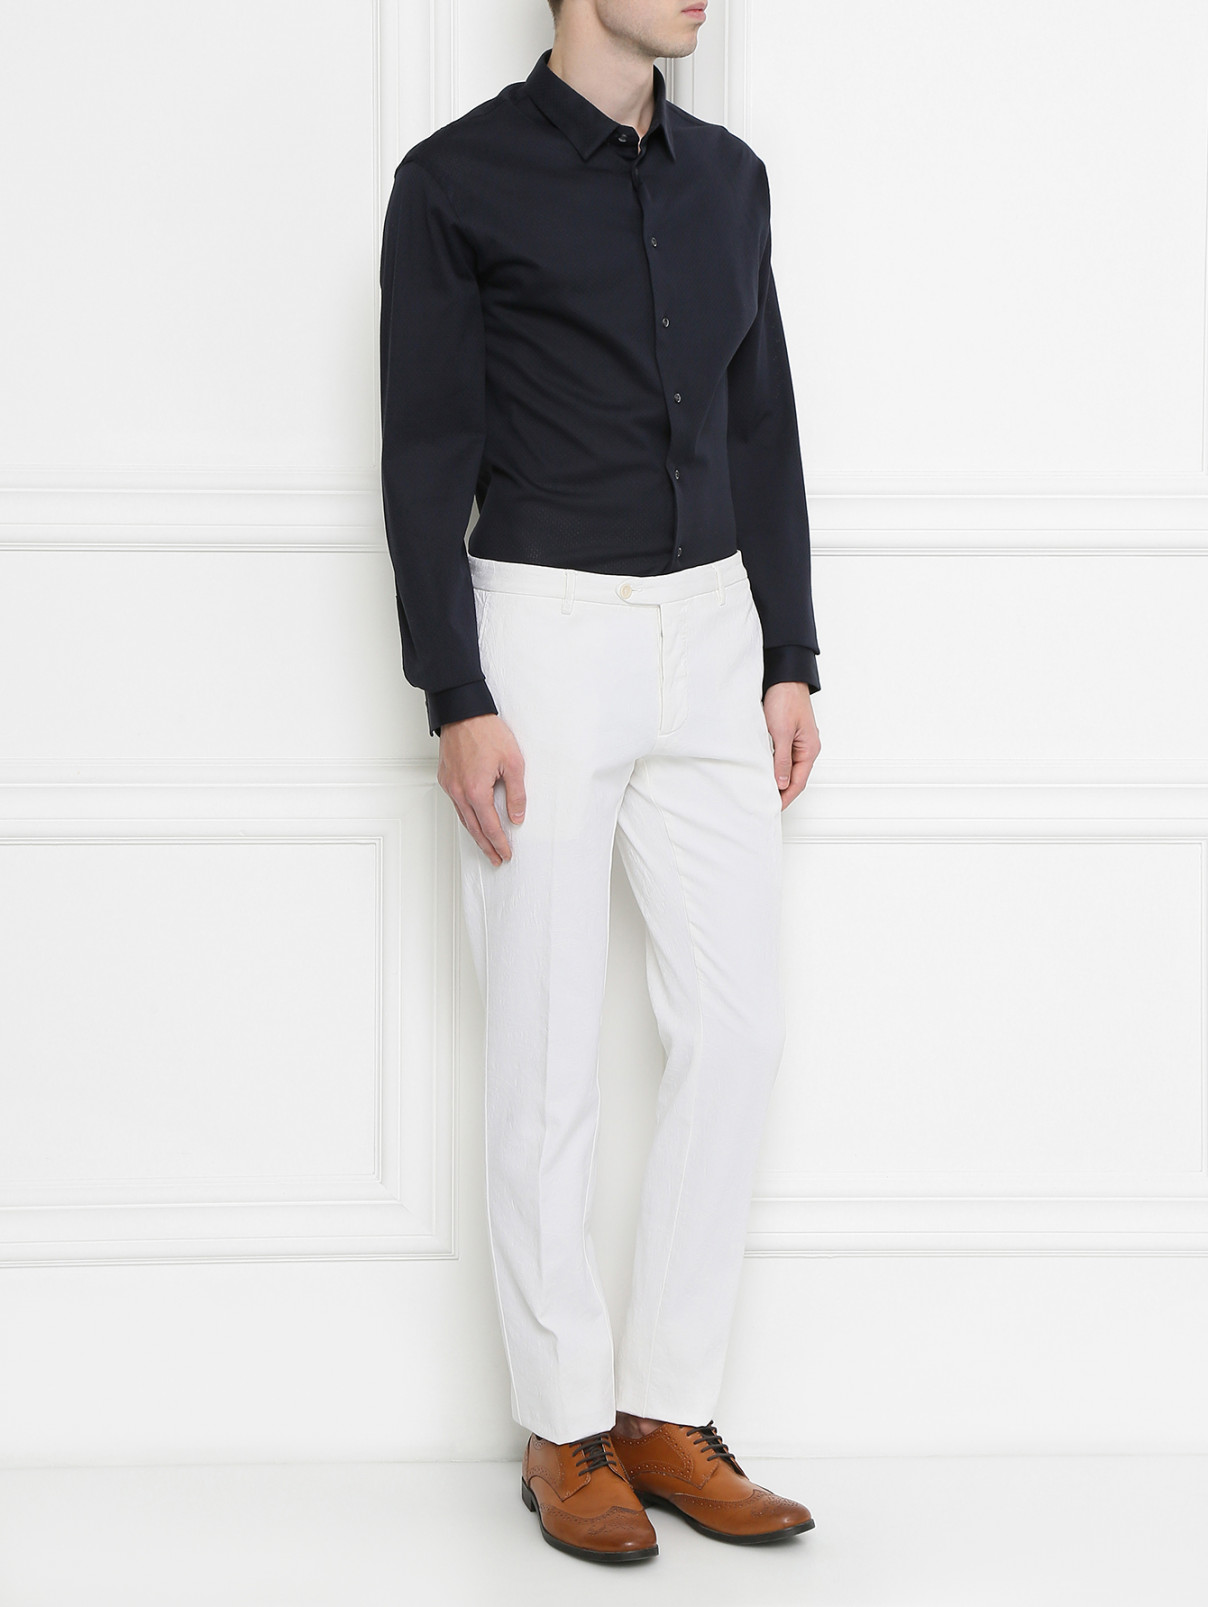 Рубашка из хлопка Emporio Armani  –  Модель Общий вид  – Цвет:  Черный